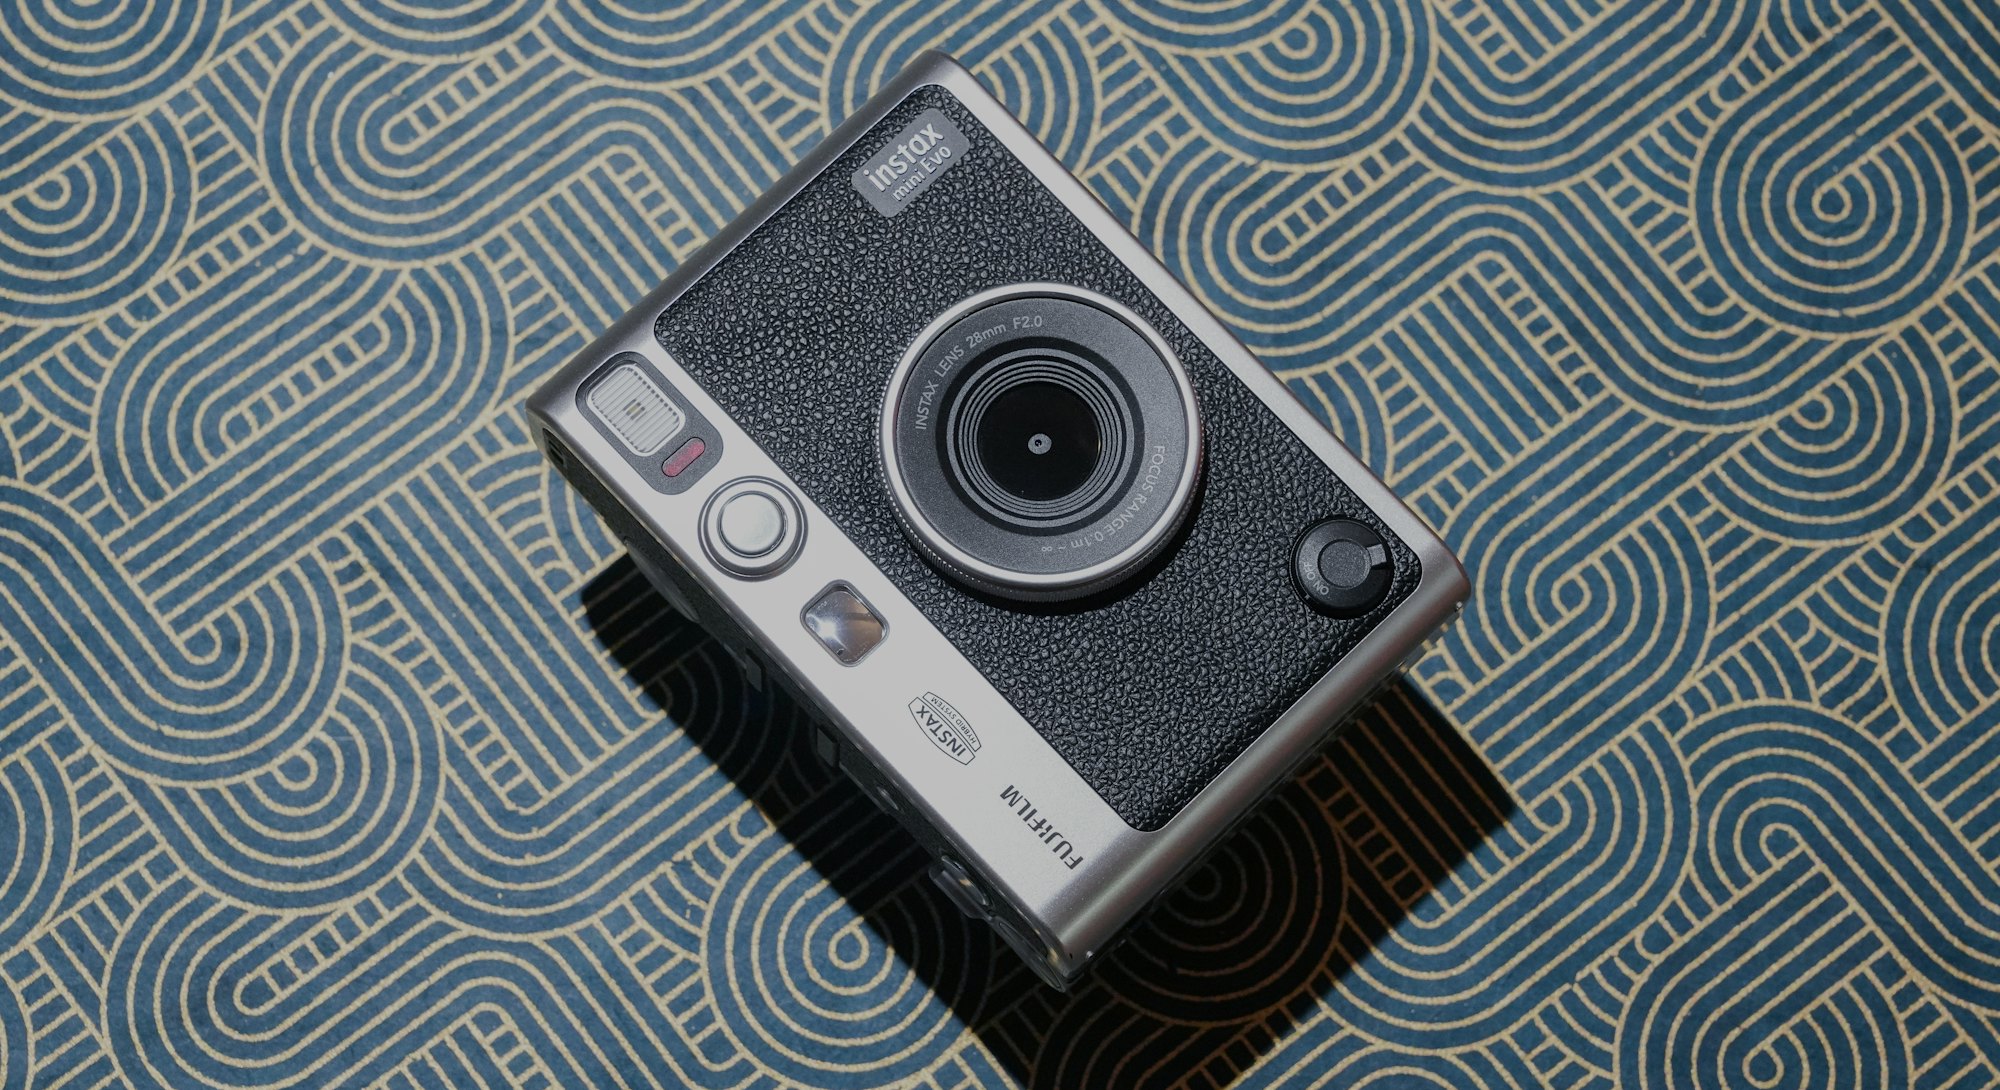 Fujifilm Instax Evo review: The best instant camera ever made no cap